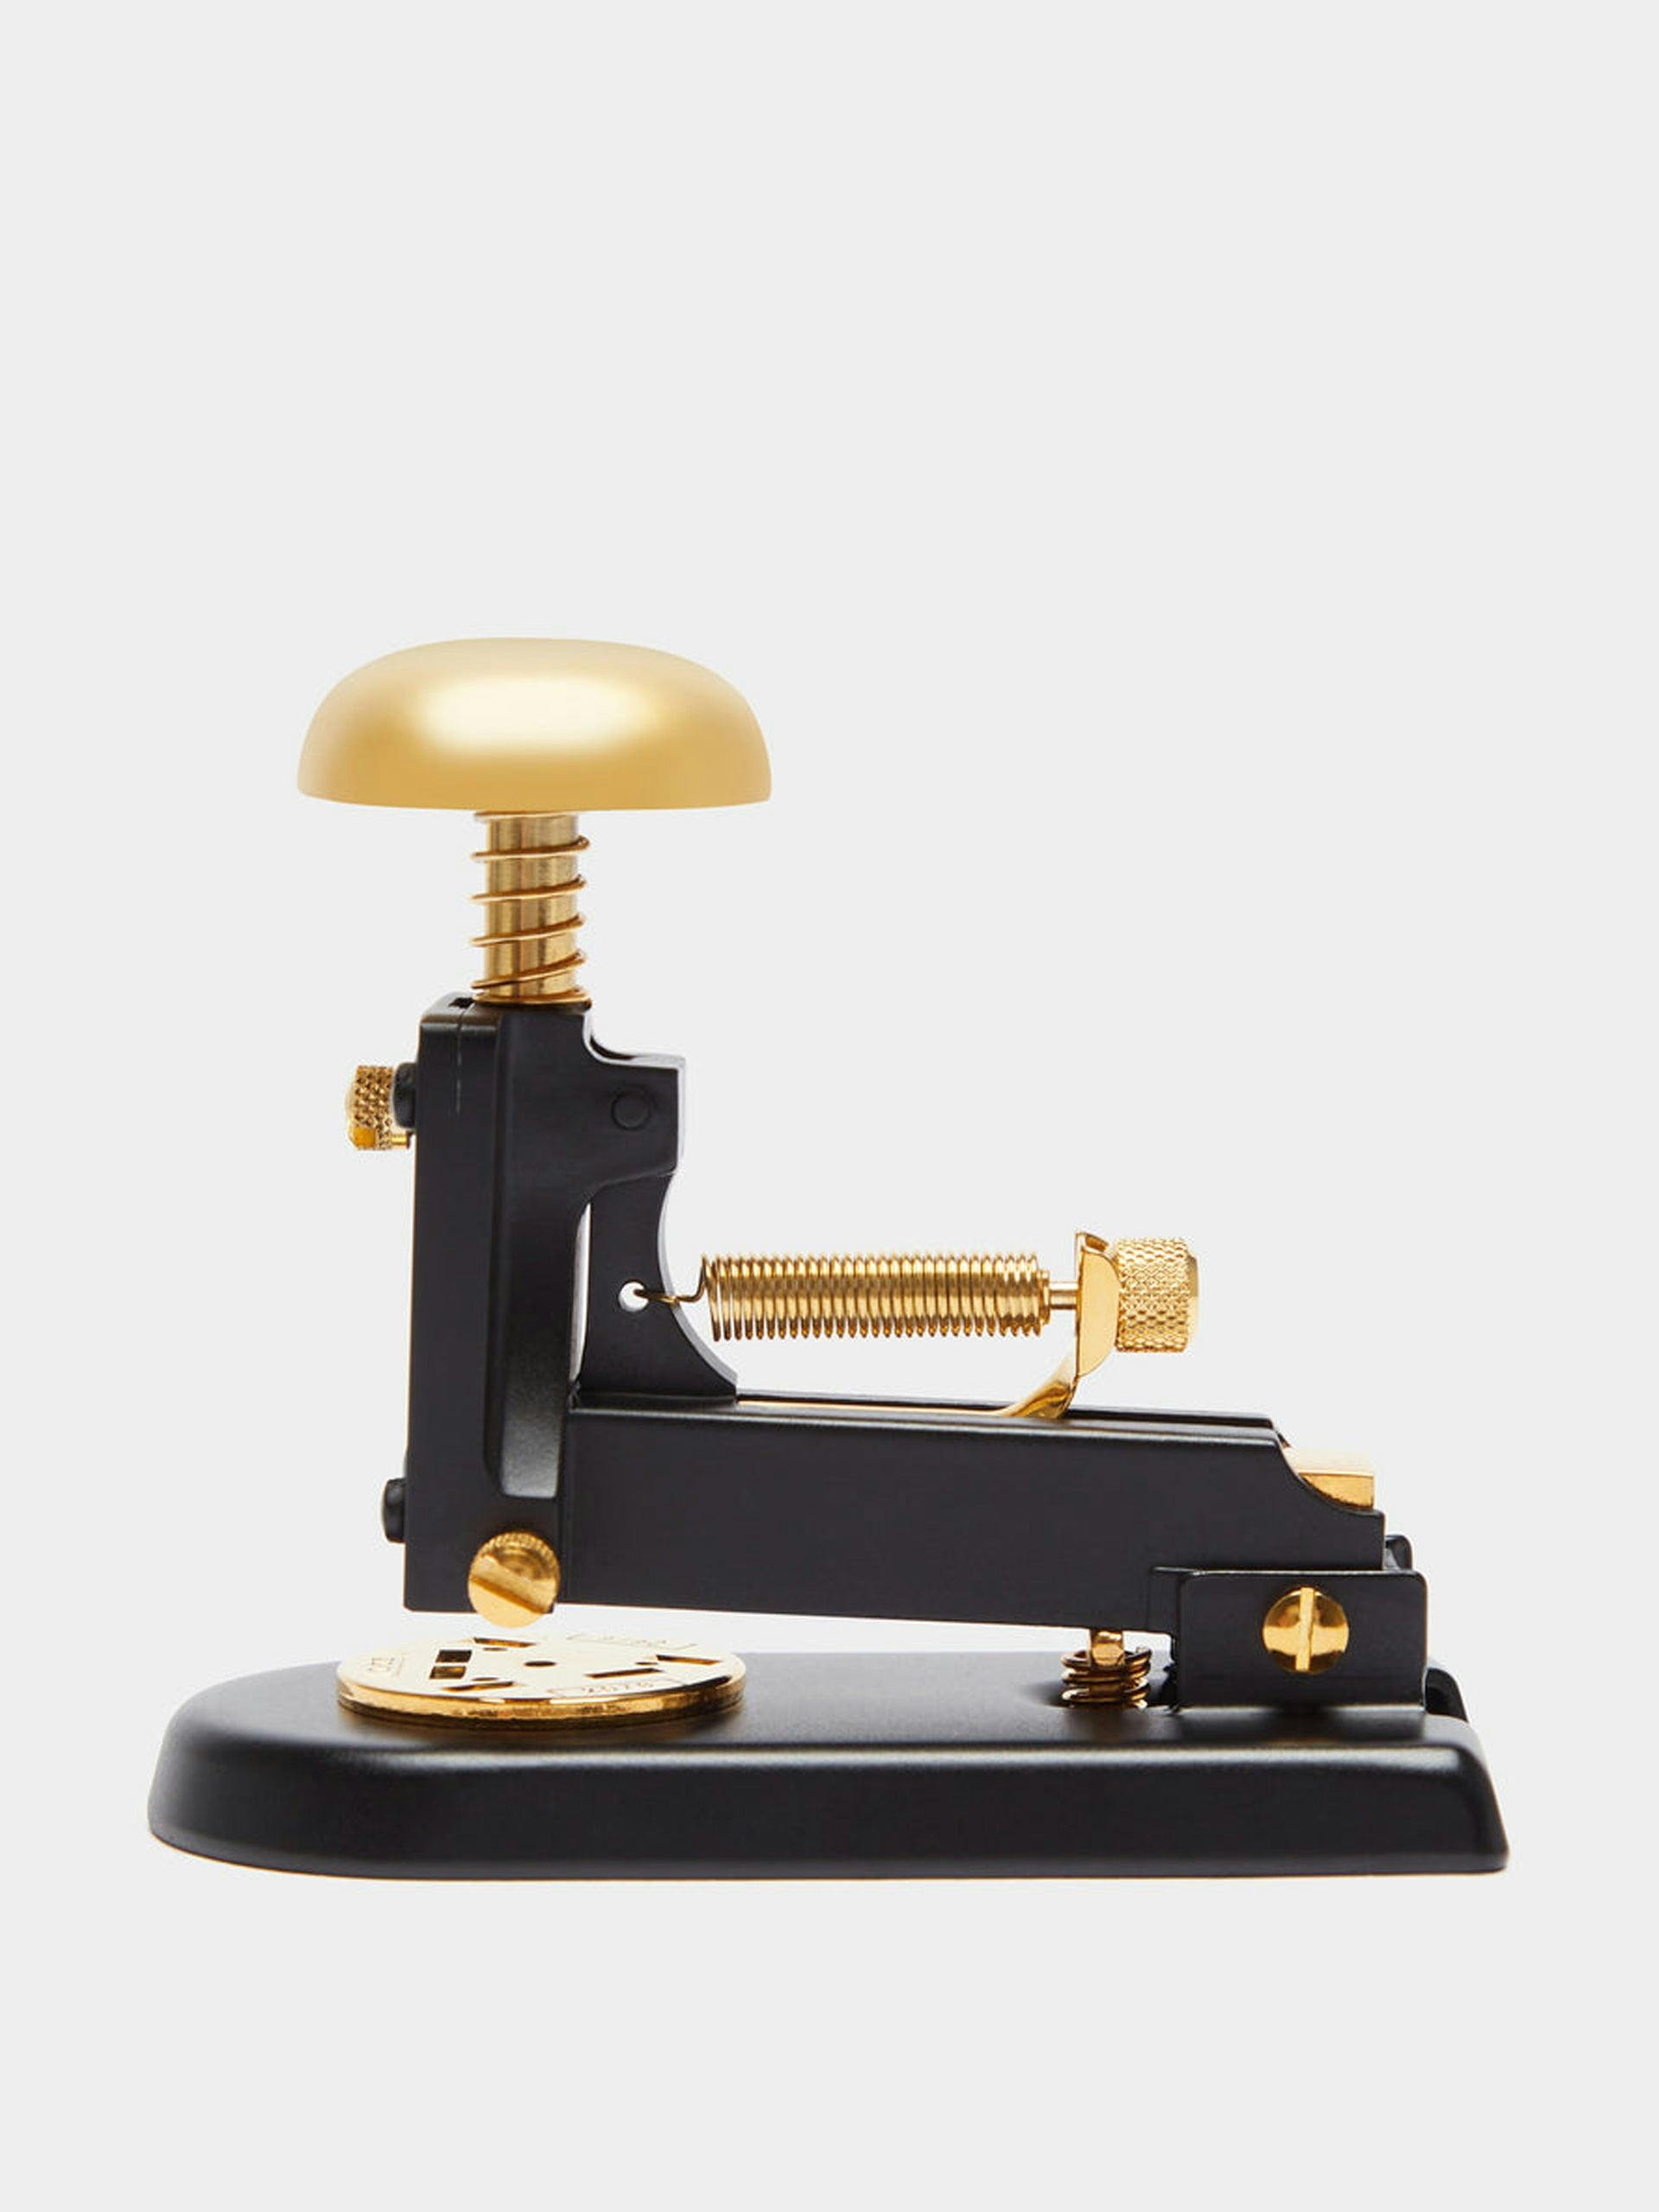 Gold plated stapler